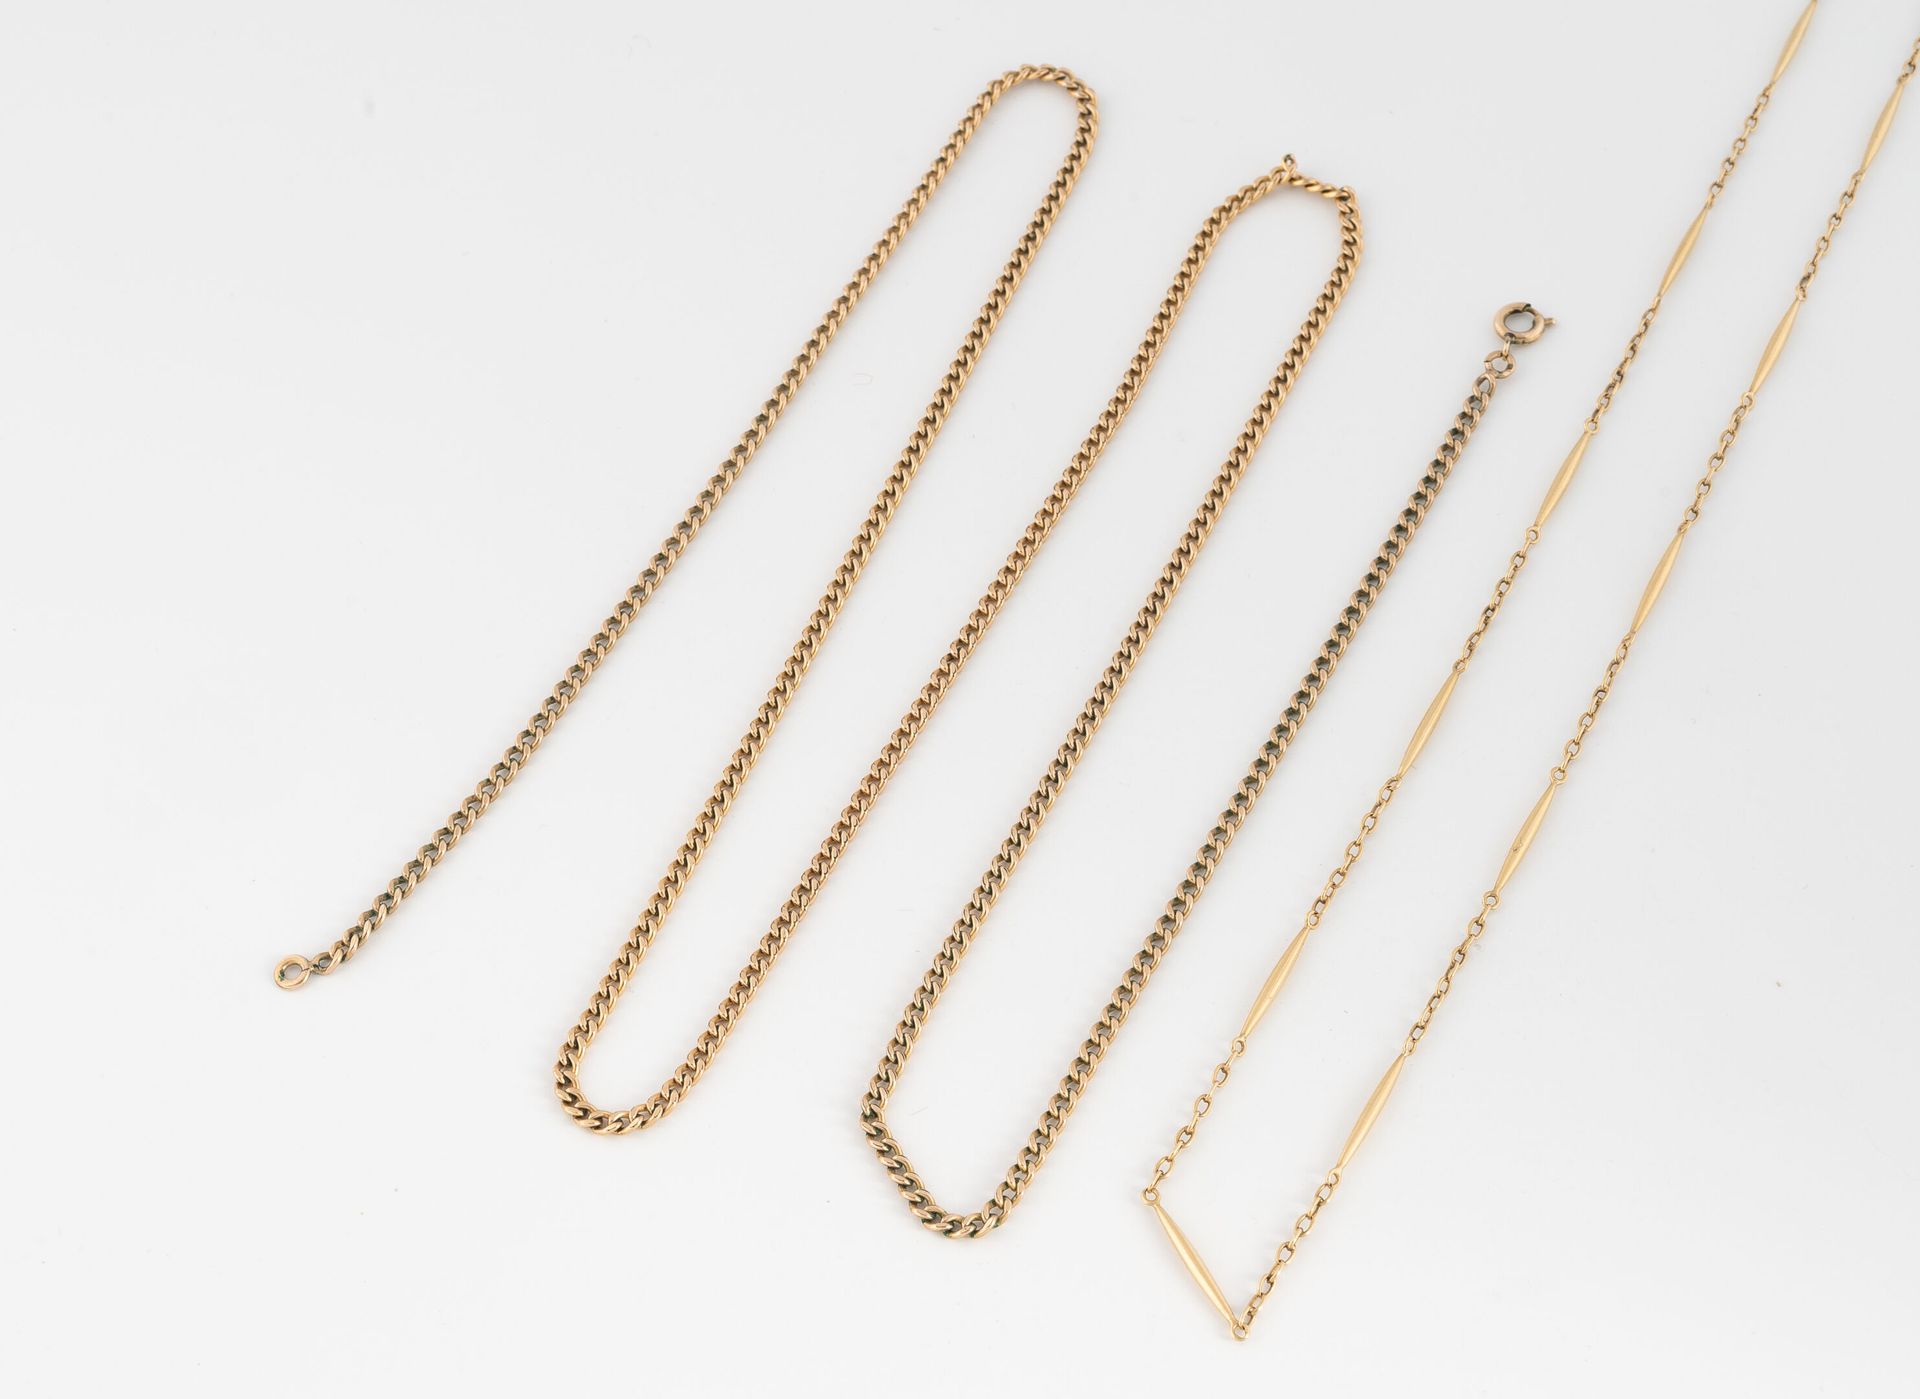 Null 黄K金（750）链条，有forçat和拉长的链接。
重量：6.1克。- 长43厘米。
附带的: 
一条鎏金金属链。